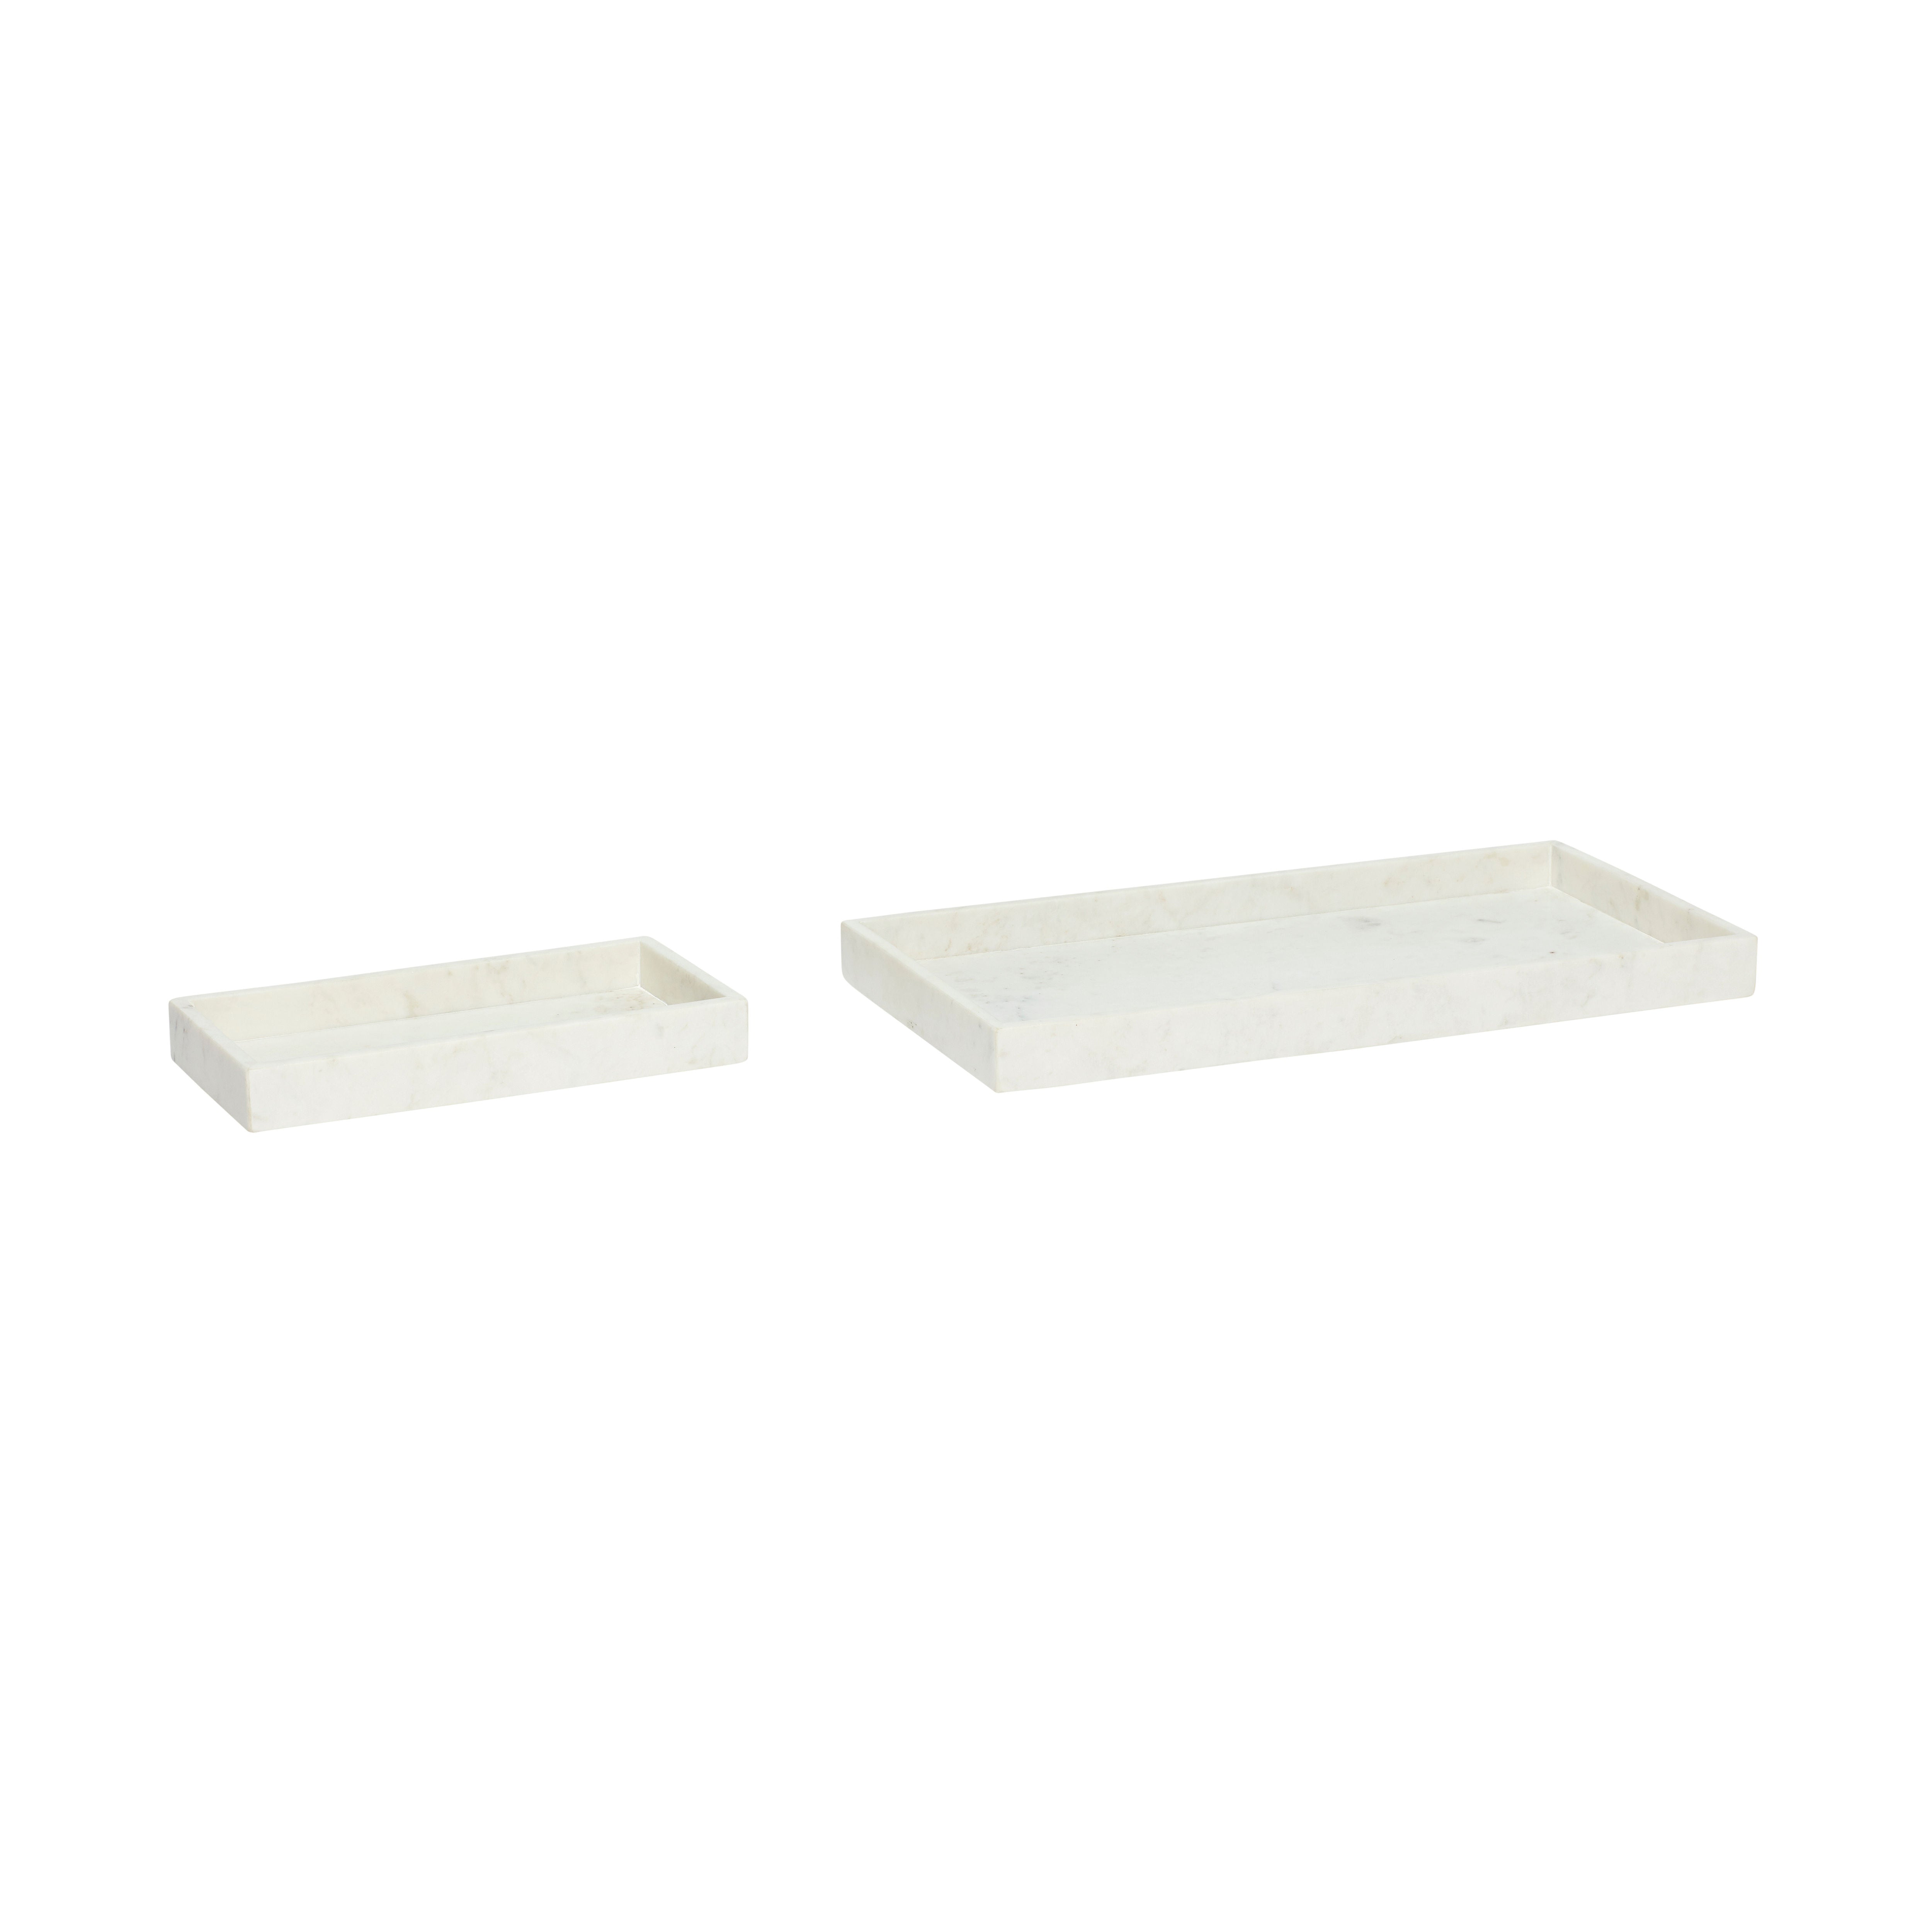 Das 2er Set Grand Tabletts in Weiß aus robustem Marmor ist eine elegante und vielseitige Ergänzung für Ihr Zuhause, perfekt für das Servieren von Speisen oder als stilvolle Dekoration